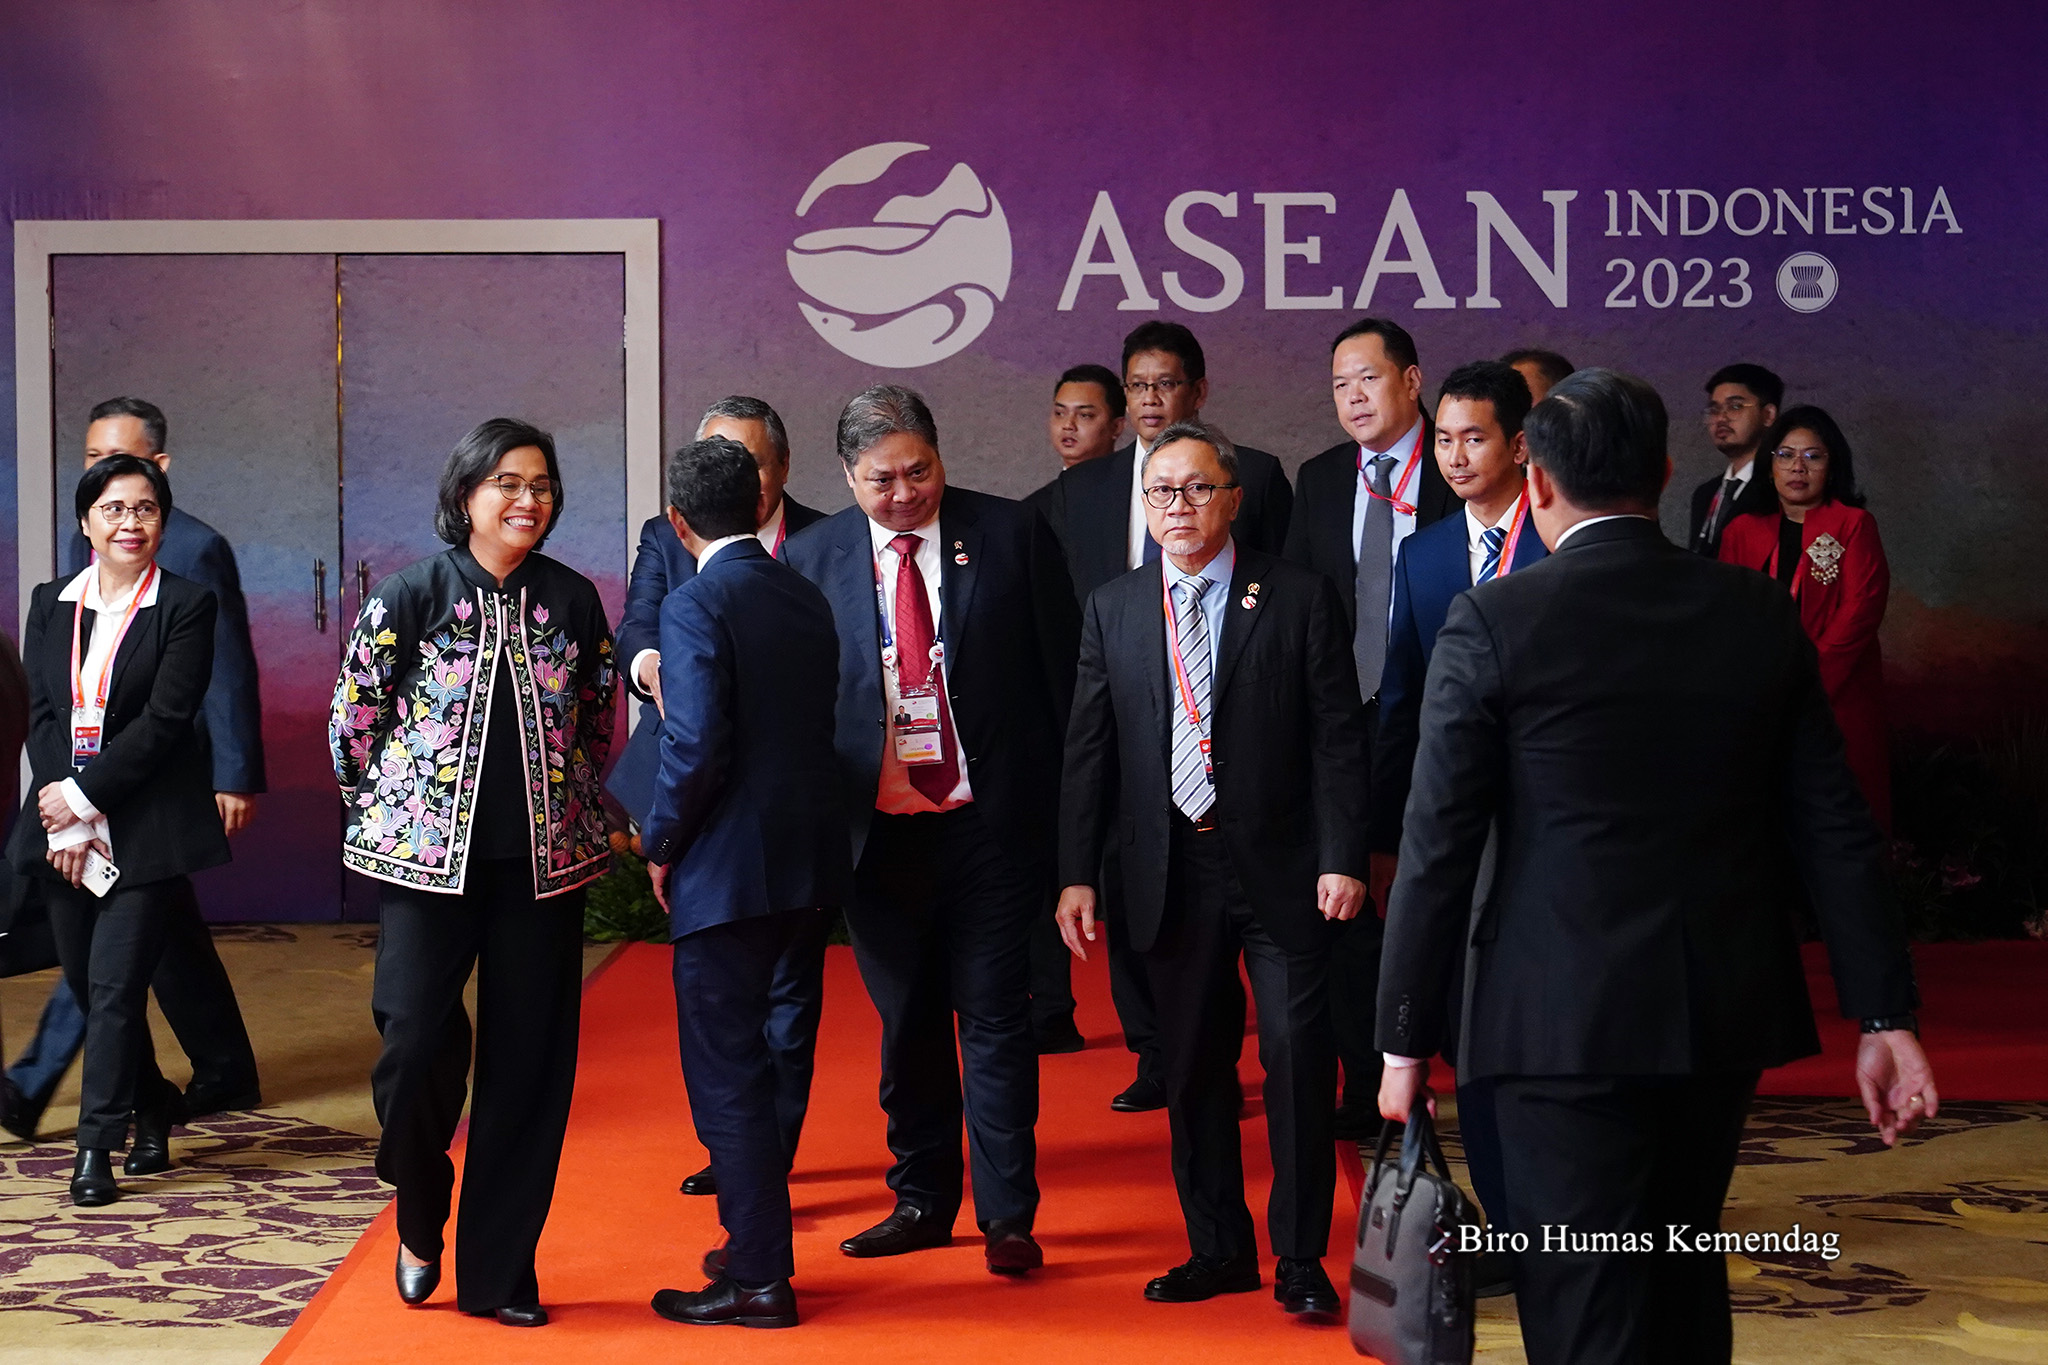 Forum ini merupakan peluang penting bagi Indonesia, khususnya serta bagi negara-negara ASEAN lainnya, maupun Indo-Pasifik untuk bersatu dan memetakan arah kerja sama dan pertumbuhan inklusif di masa mendatang.